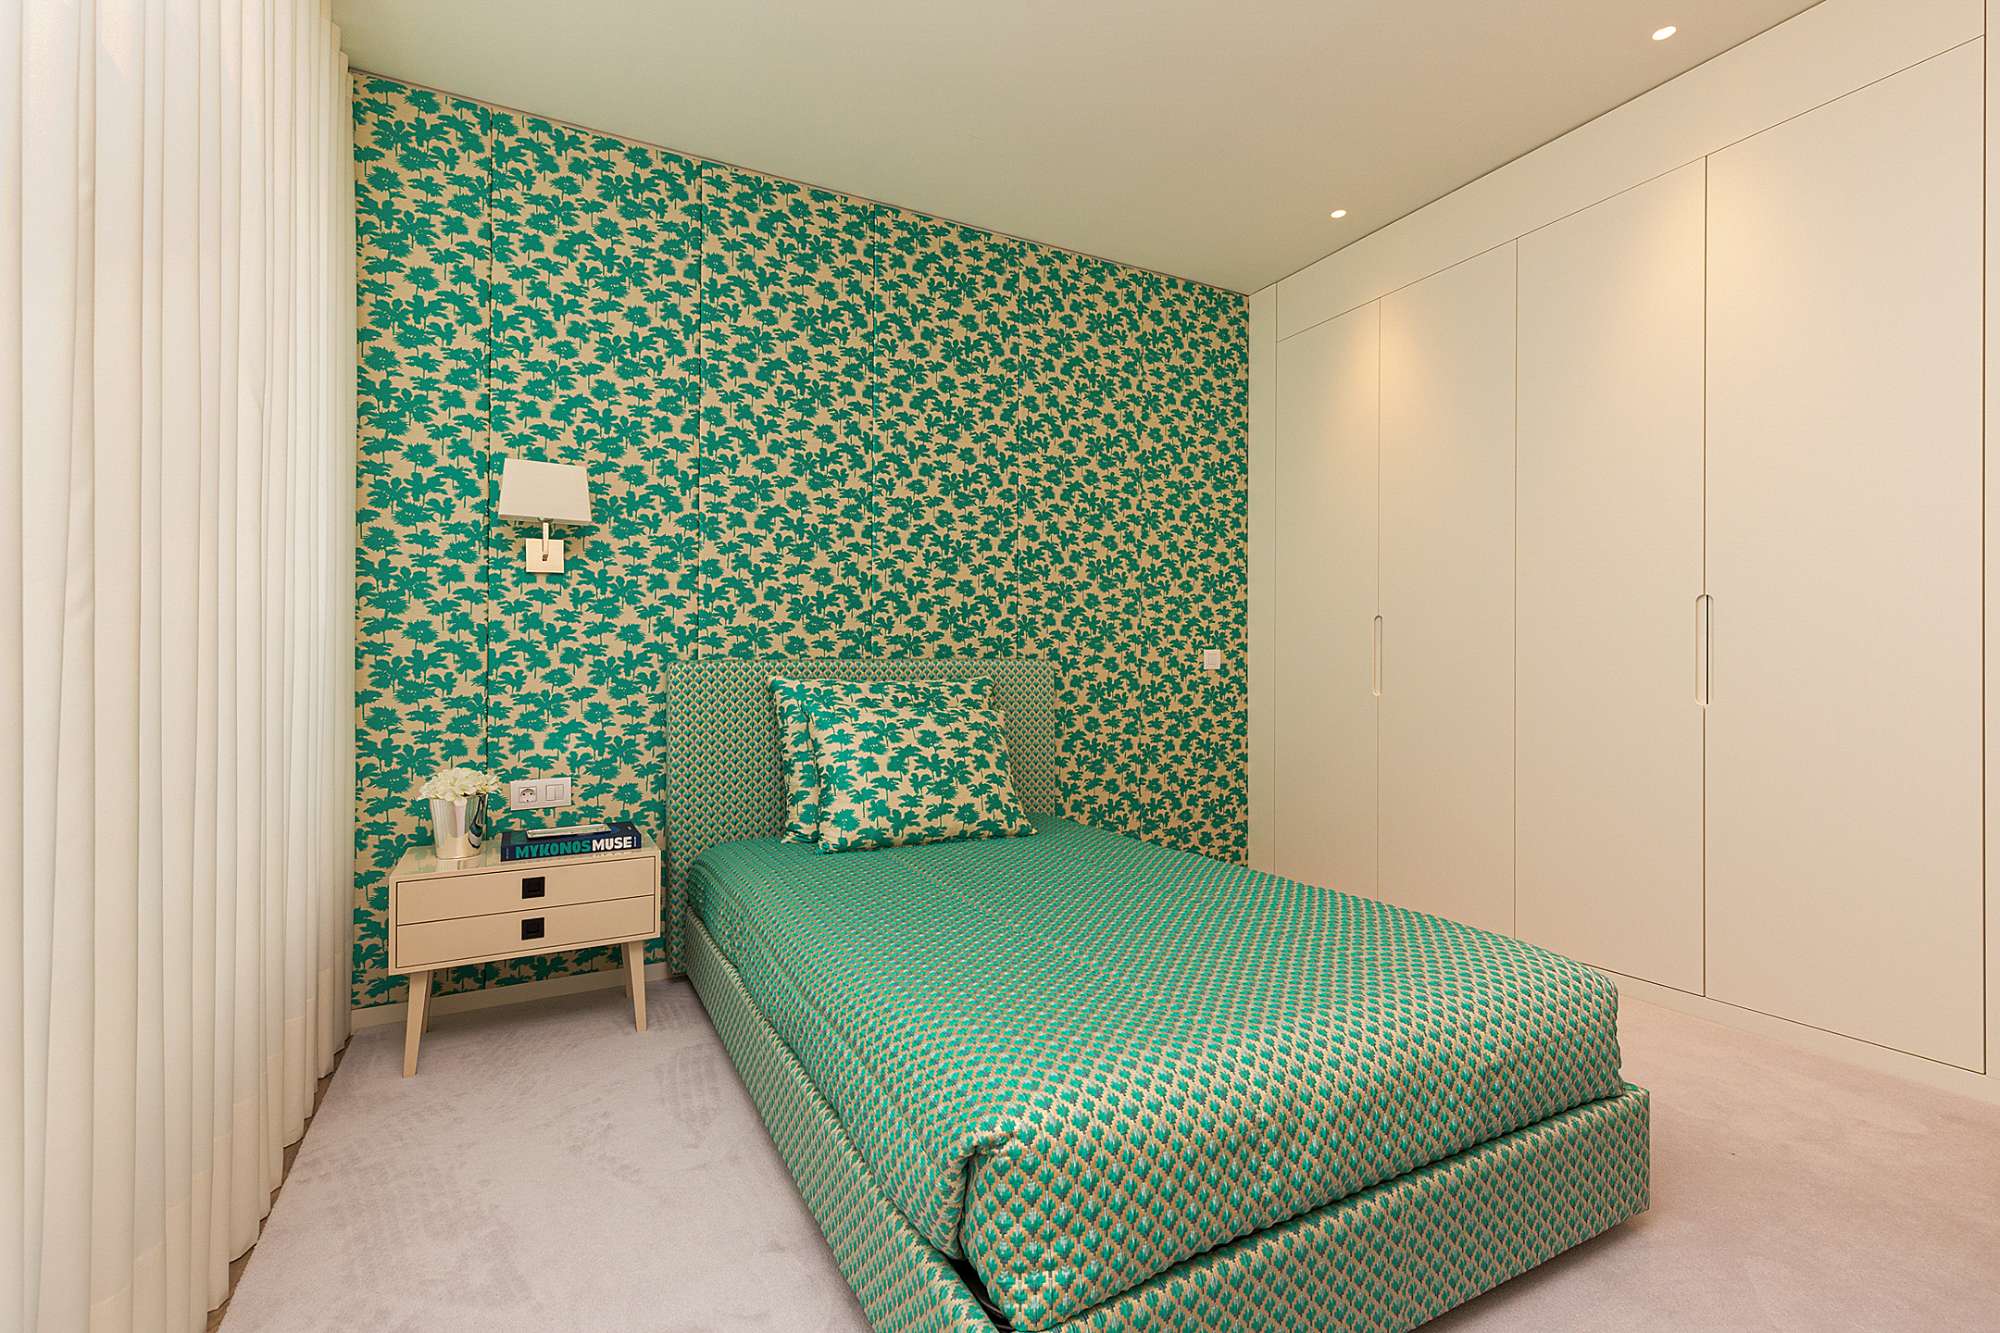 1 bedroom apartment with parking located in Braço de Prata, Parque das Nações